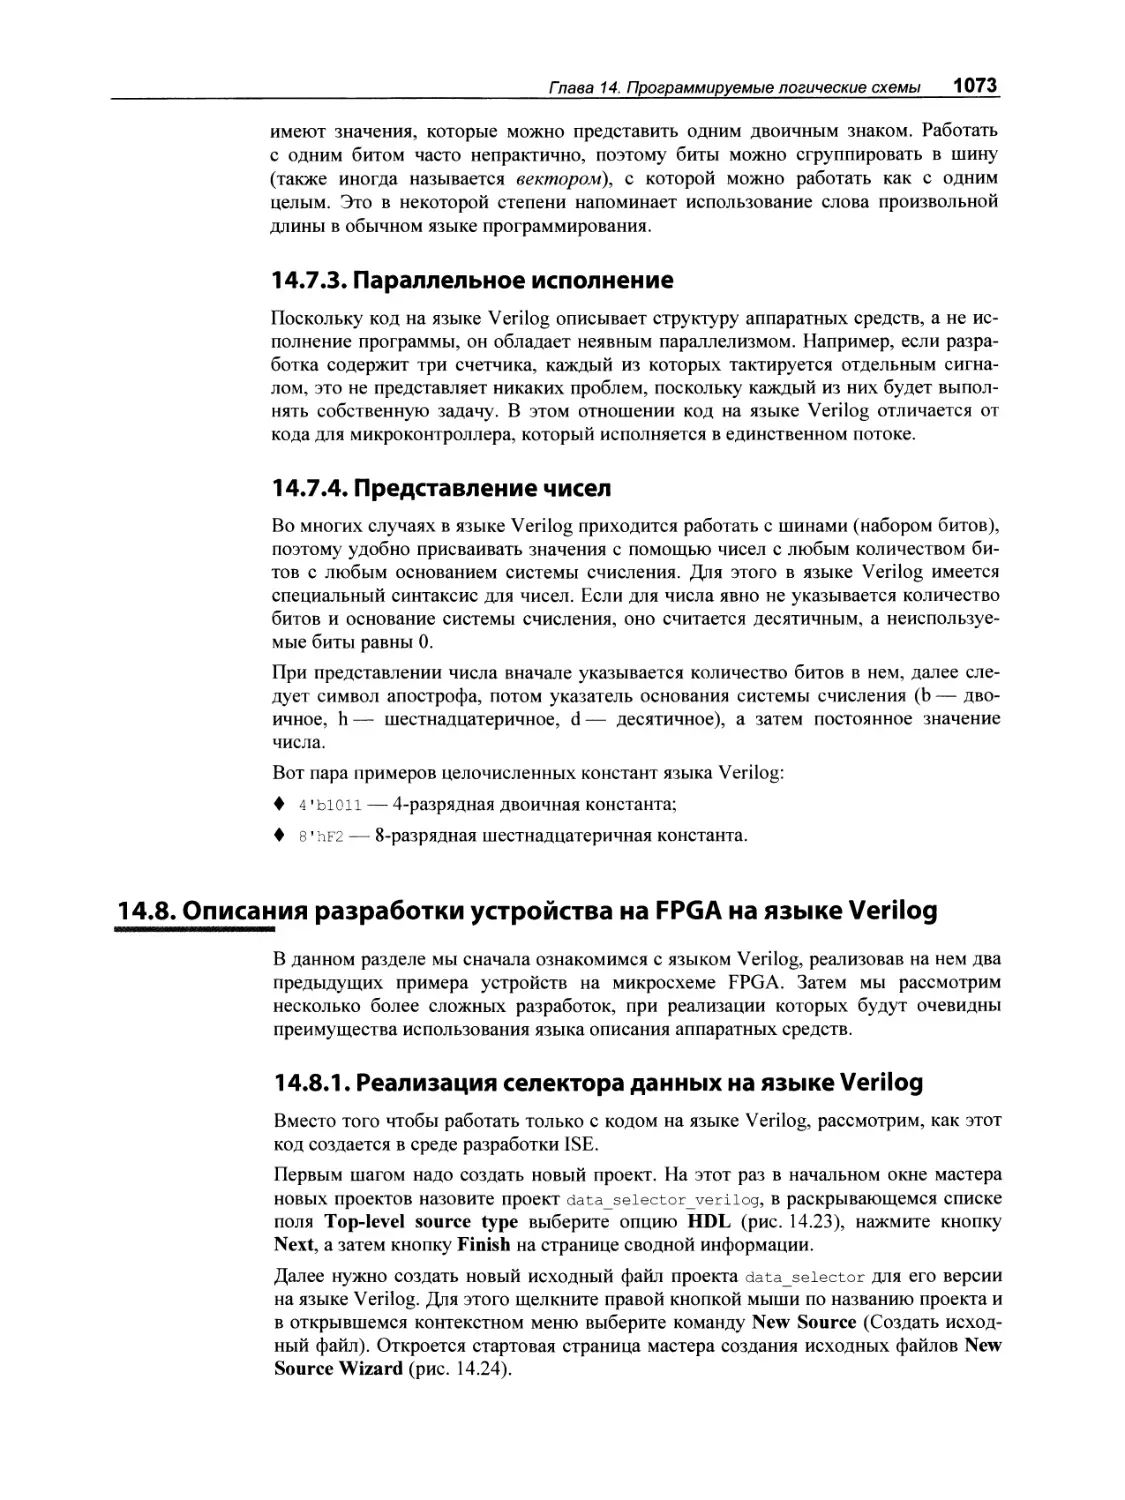 14.7.3. Параллельное исполнение
14.7.4. Представление чисел
14.8. Описания разработки устройства на FPGA на языке Verilog